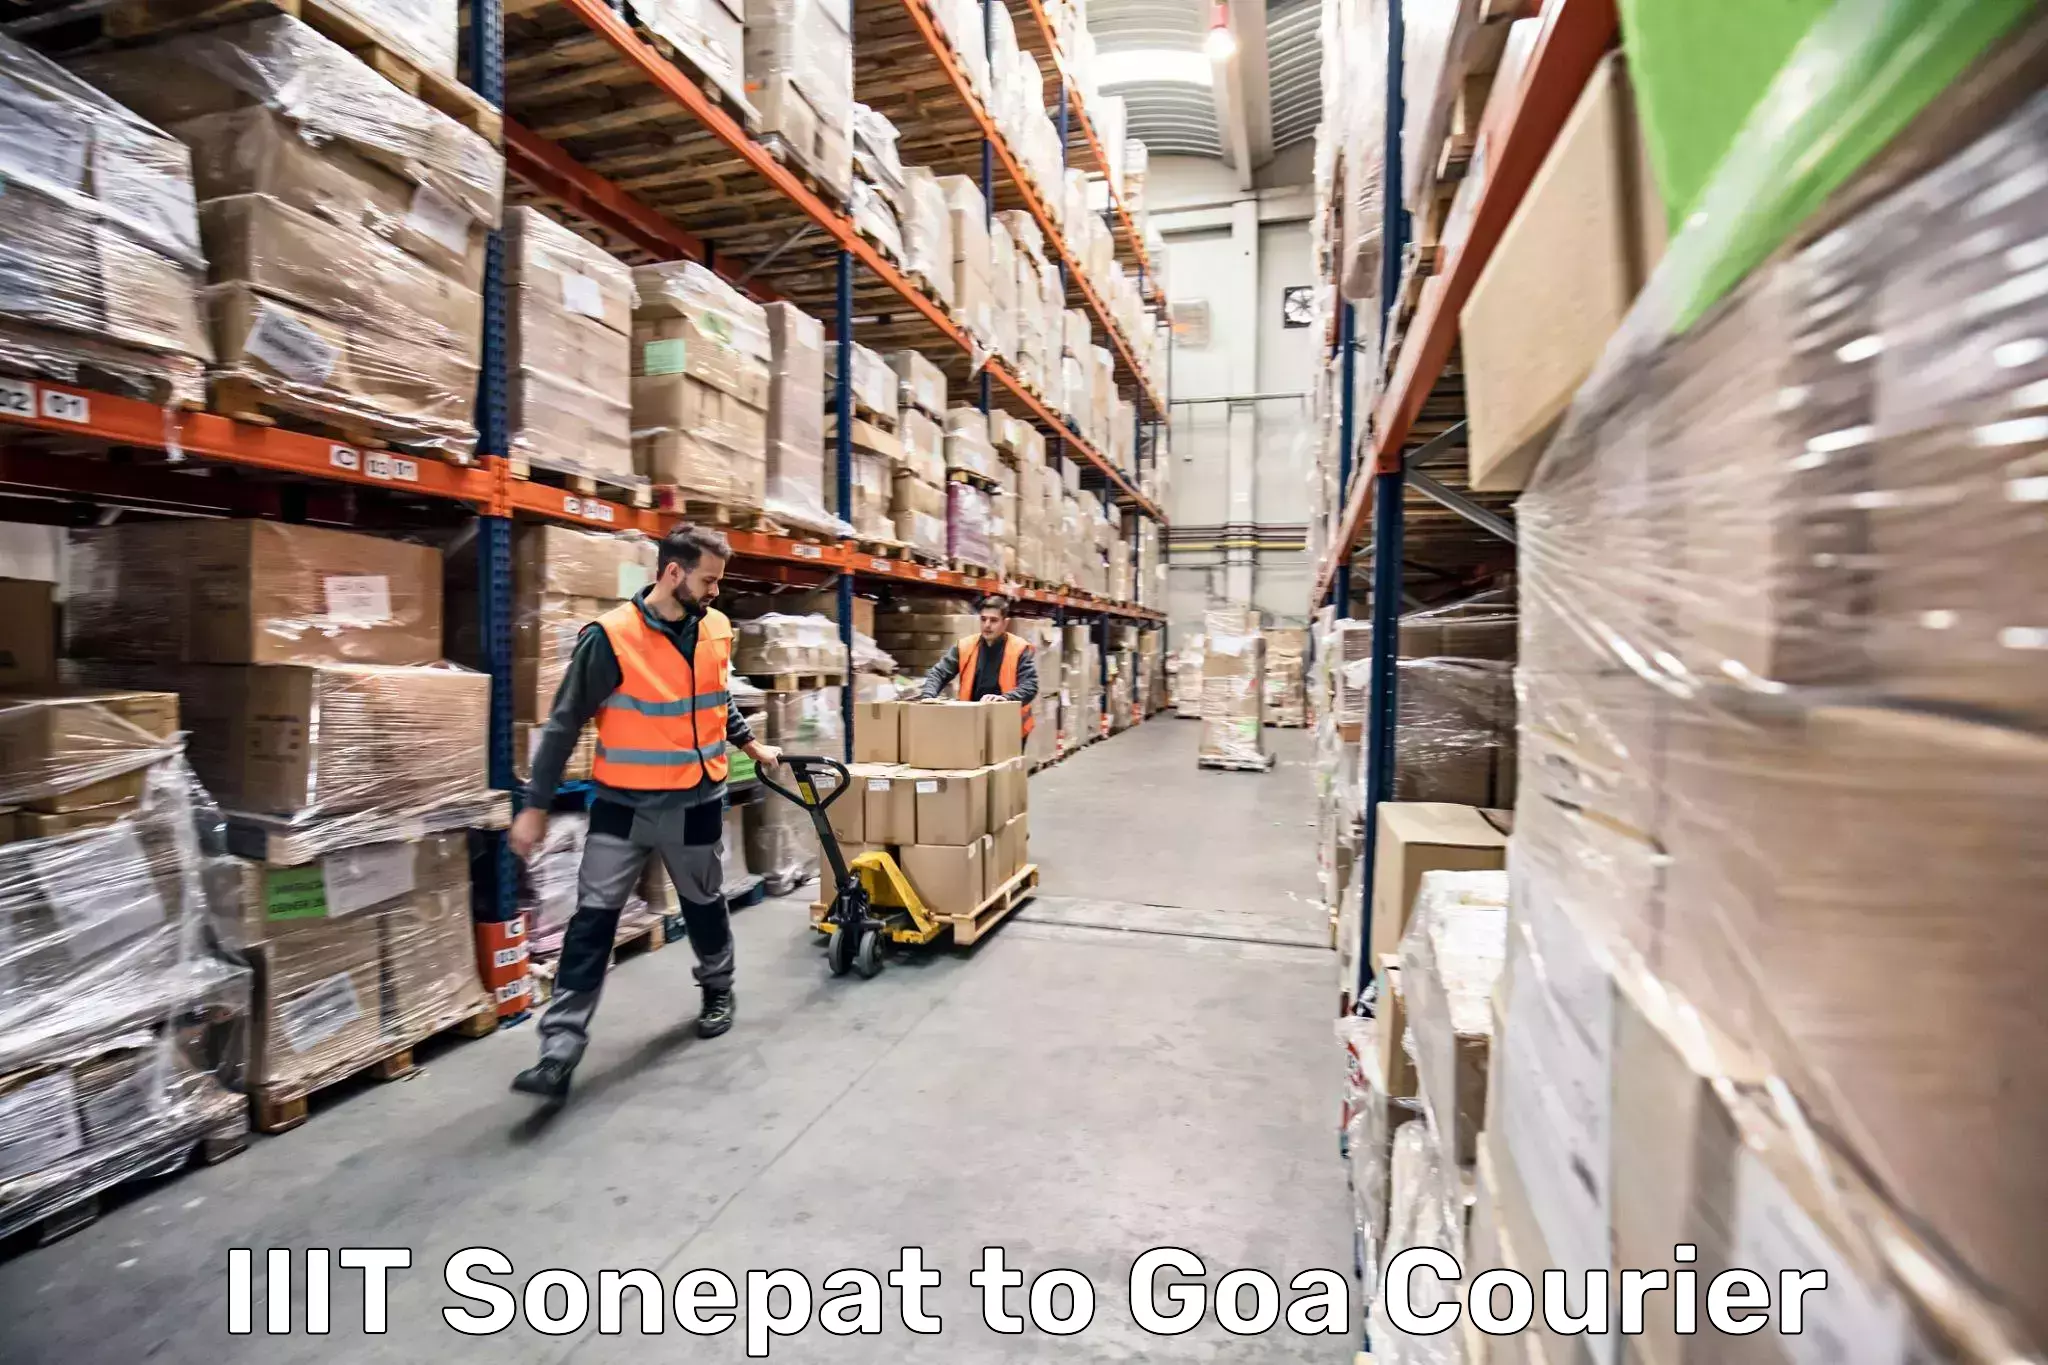 Luggage delivery network IIIT Sonepat to Mormugao Port